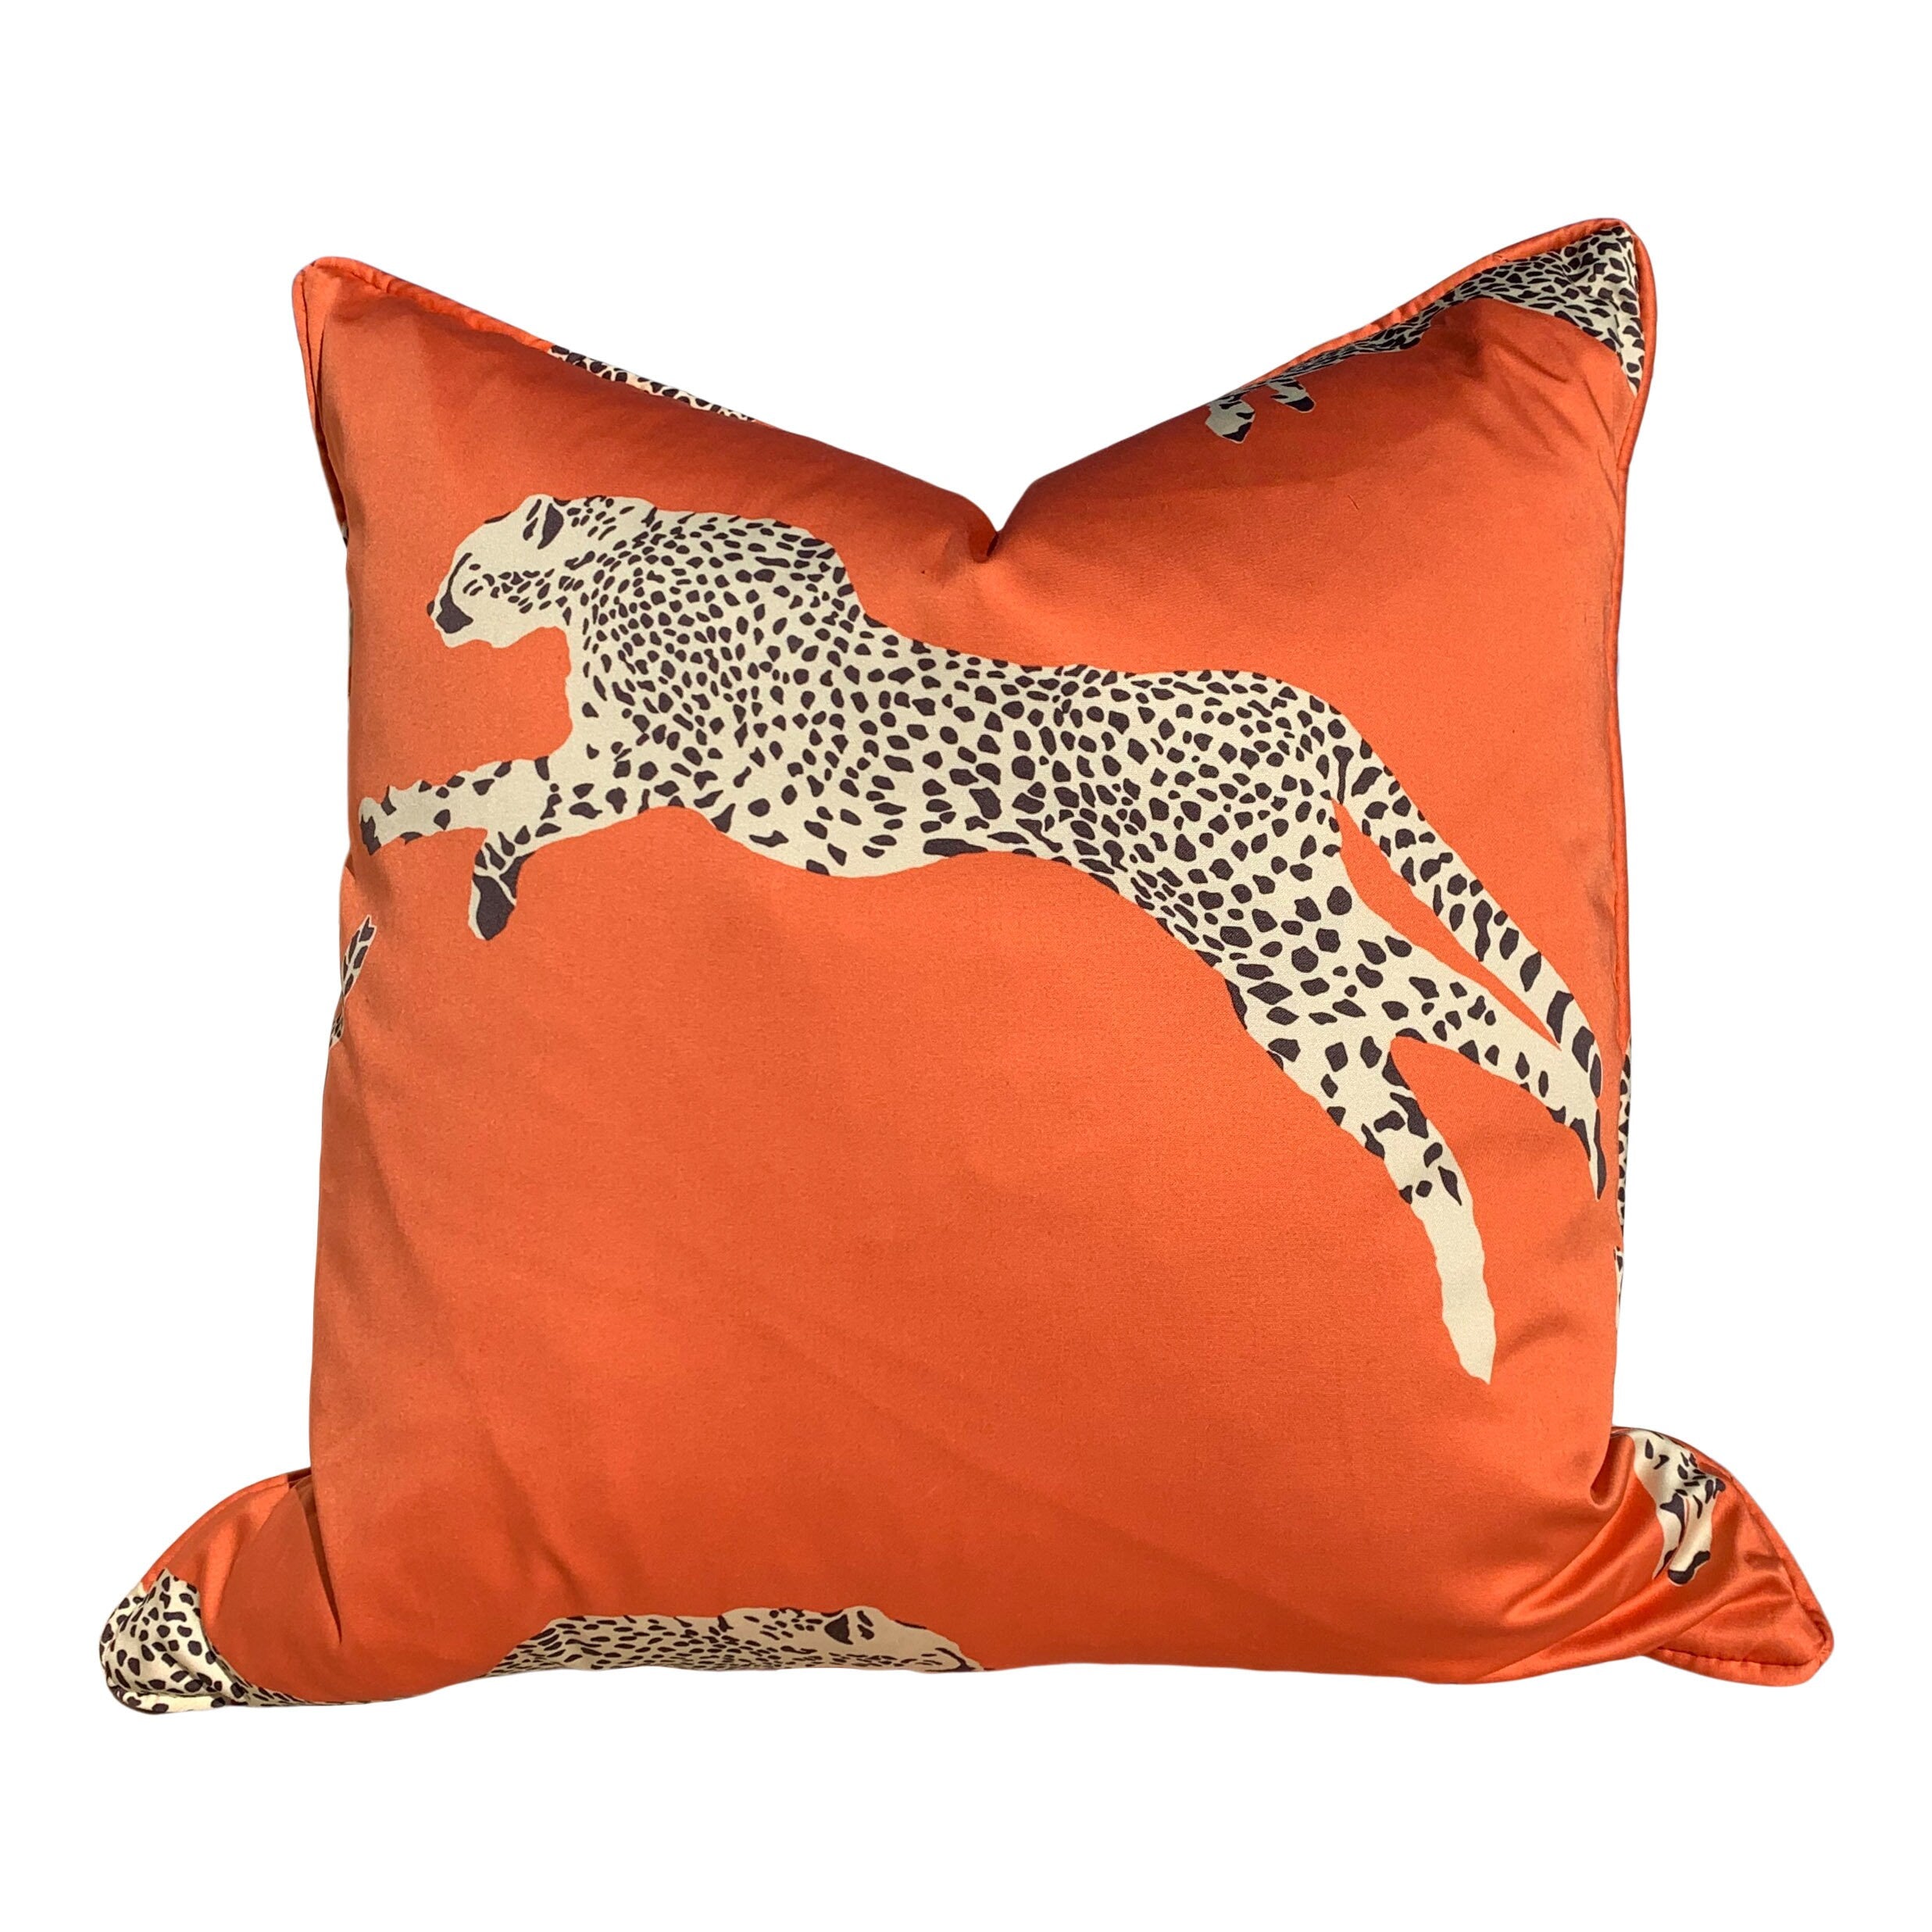 Leaping Cheetah Clementine Pillow. Animal Print Decor, Rectangular Lumbar Pillow, Safari Pillow Cover, Decorative Pillow, Euro Sham